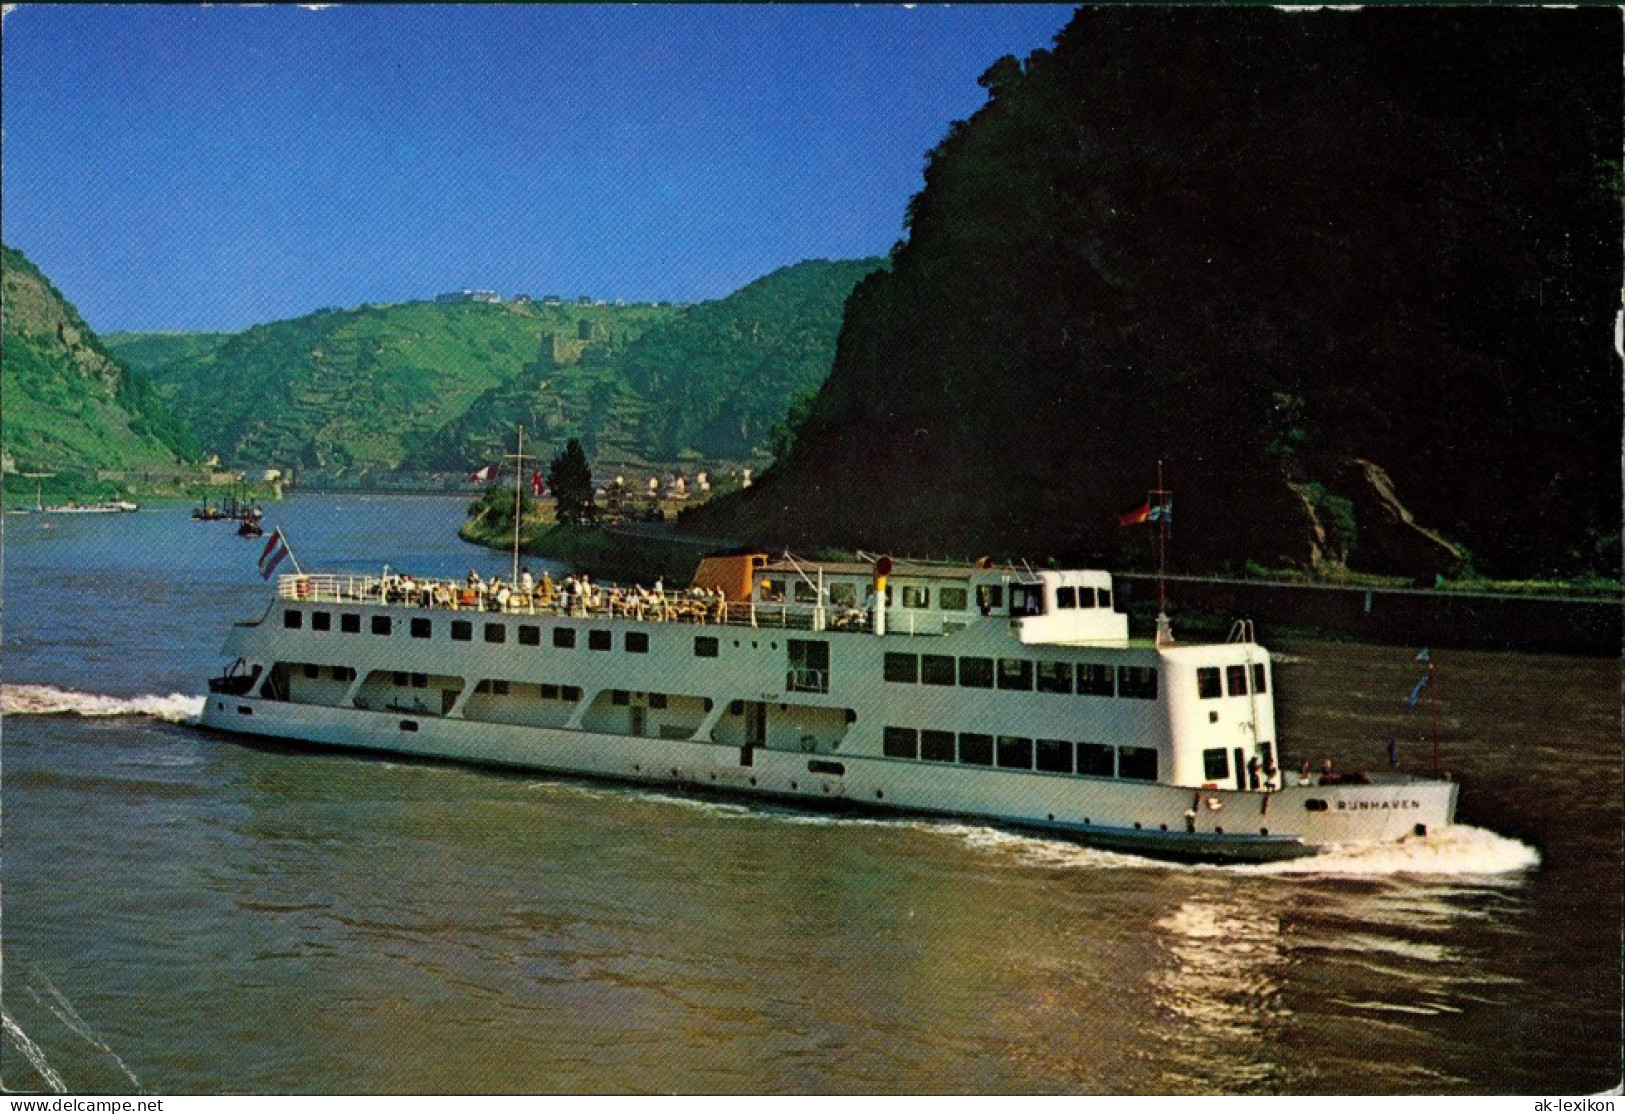 Ansichtskarte  Fahrgastschiff Rhein Schiff RUNHAVEN Personenschiffahrt 1975 - Ferries